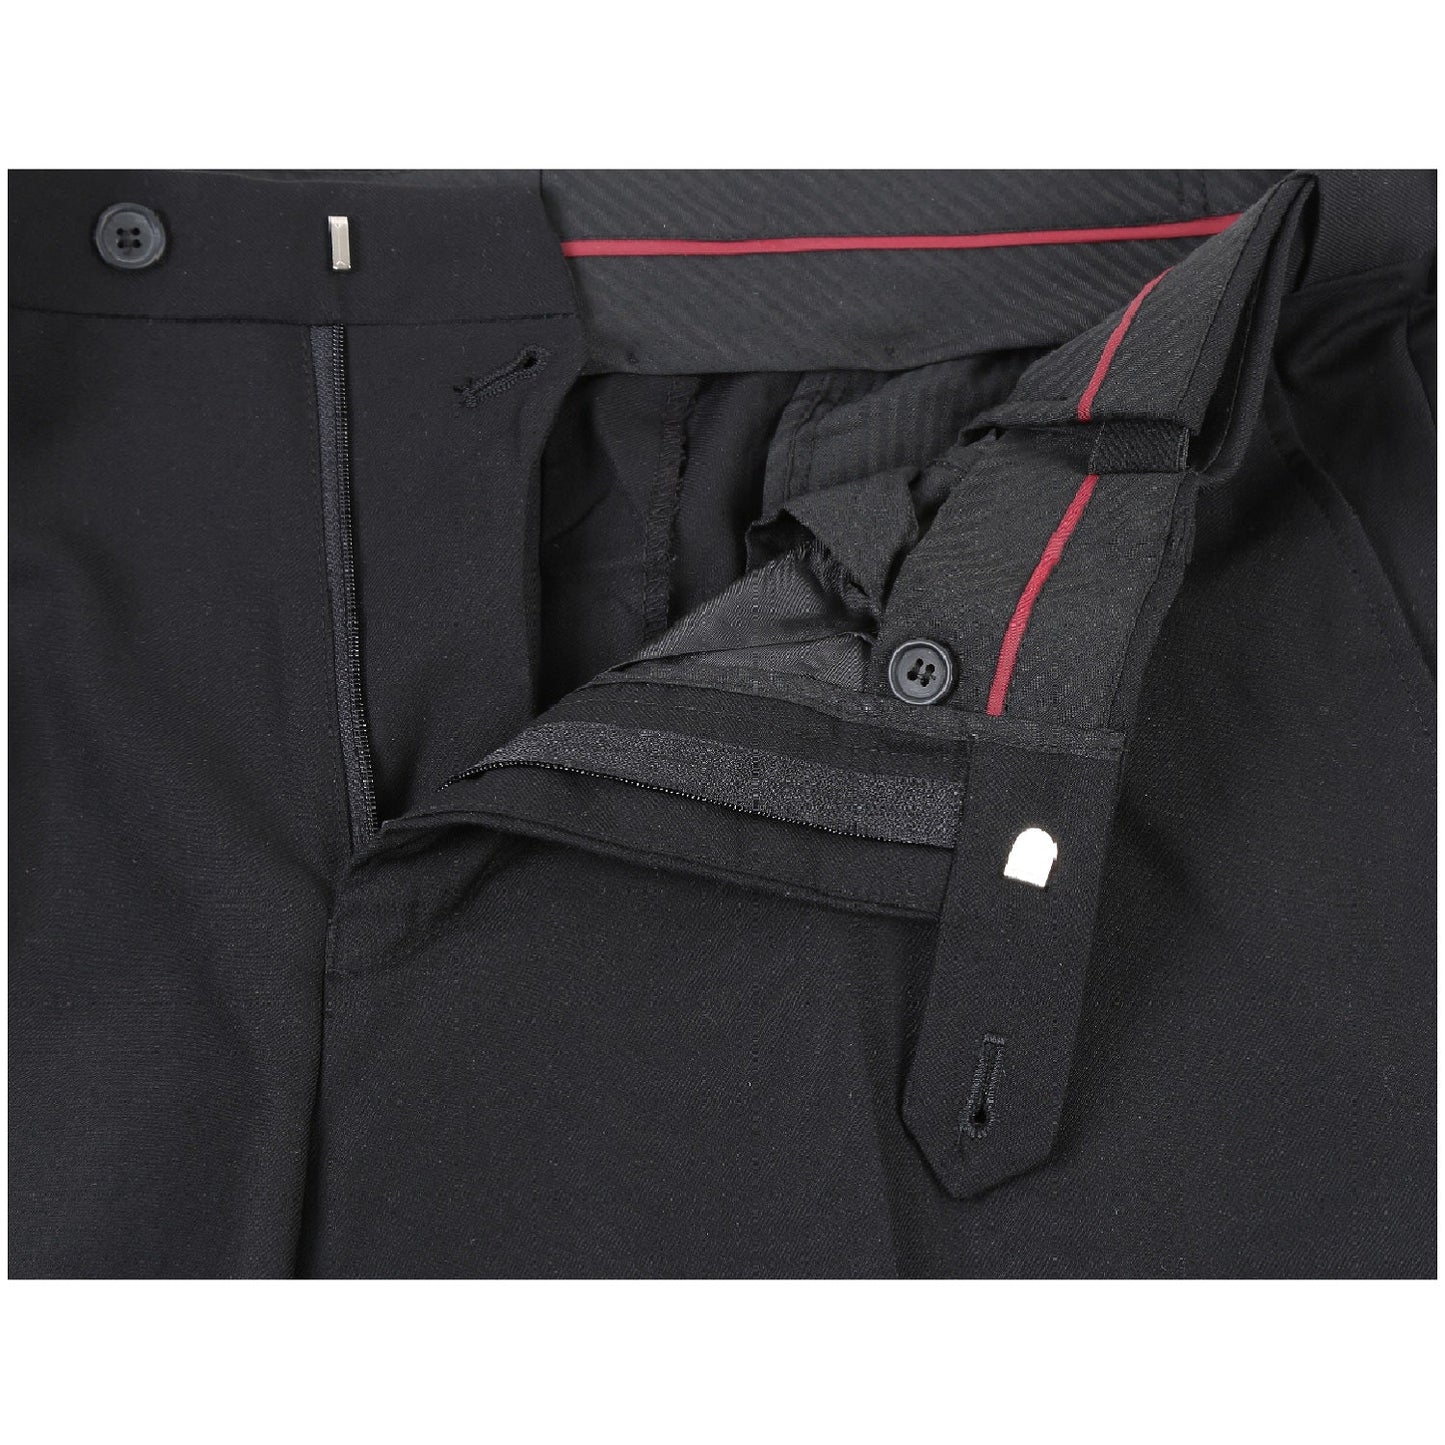 201-1 Classic Fit Men's Flat Front Suit Separate Black Pants